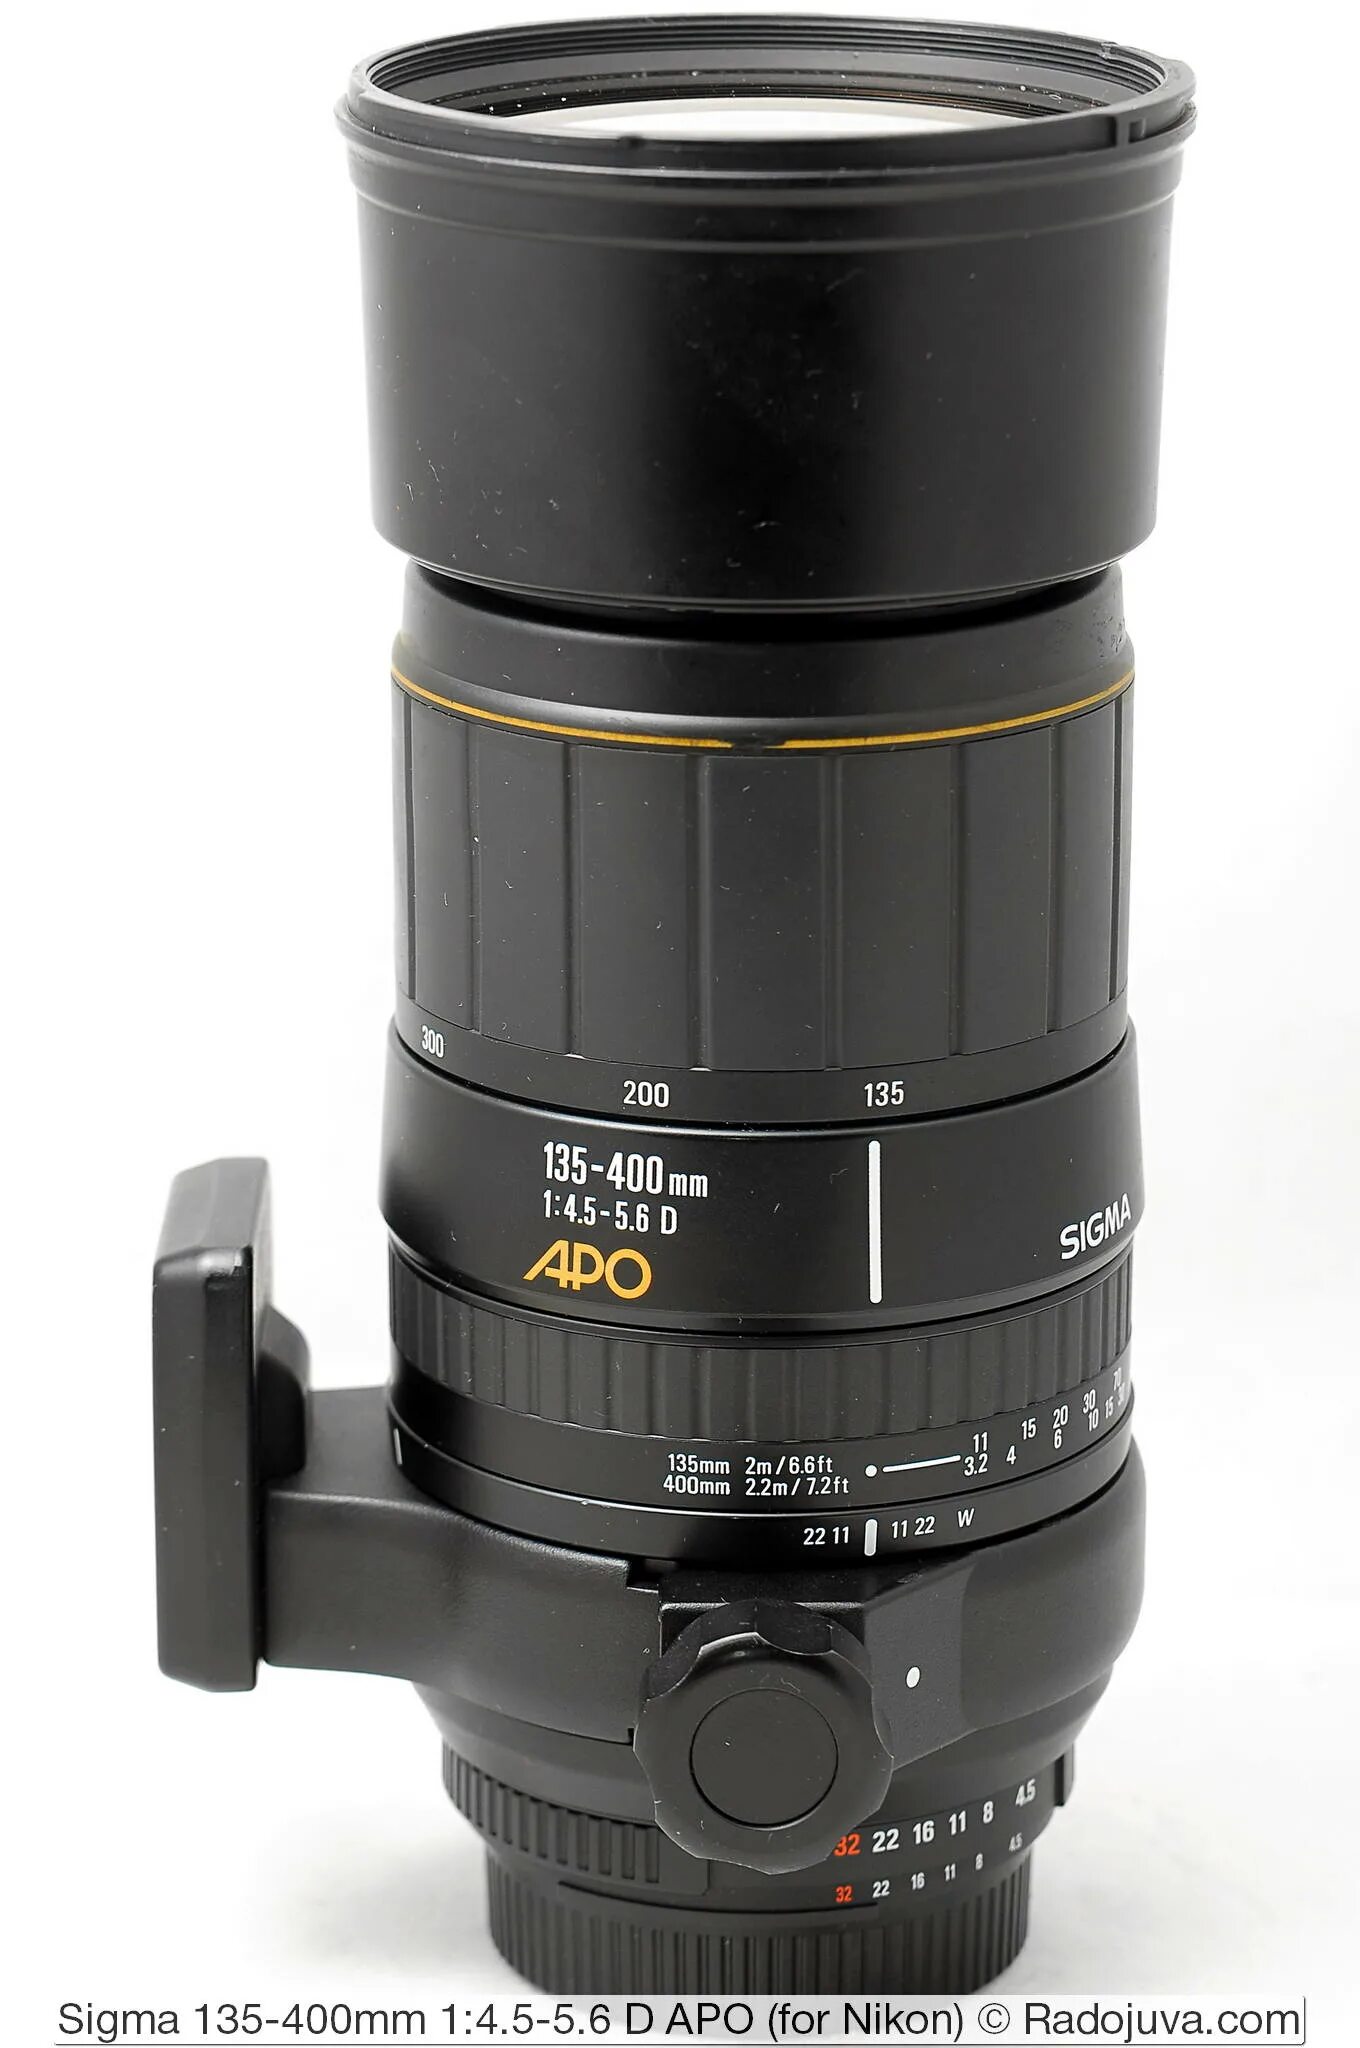 Sigma 135-400. Sigma 135-400 mm f/4.5-5.6 apo DG EF. Sigma 135-400mm f/4.5-5.6 apo DG Canon EF.